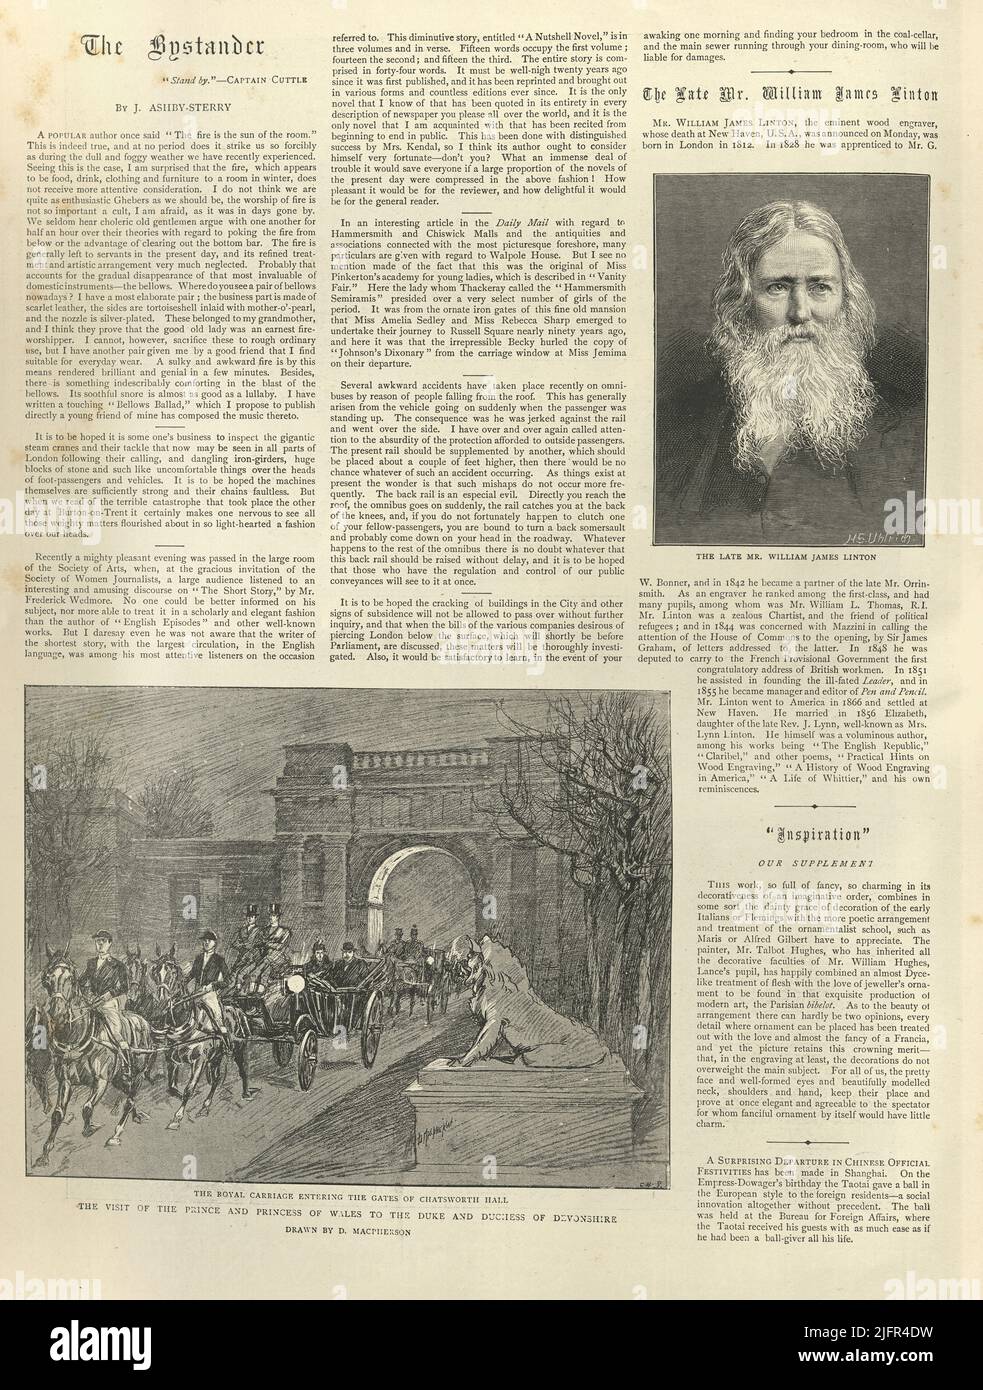 Página del periódico de la vendimia, 1898, William James Linton, el carruaje real que entra en las puertas de Chatsworth Hall, siglo 19th Foto de stock